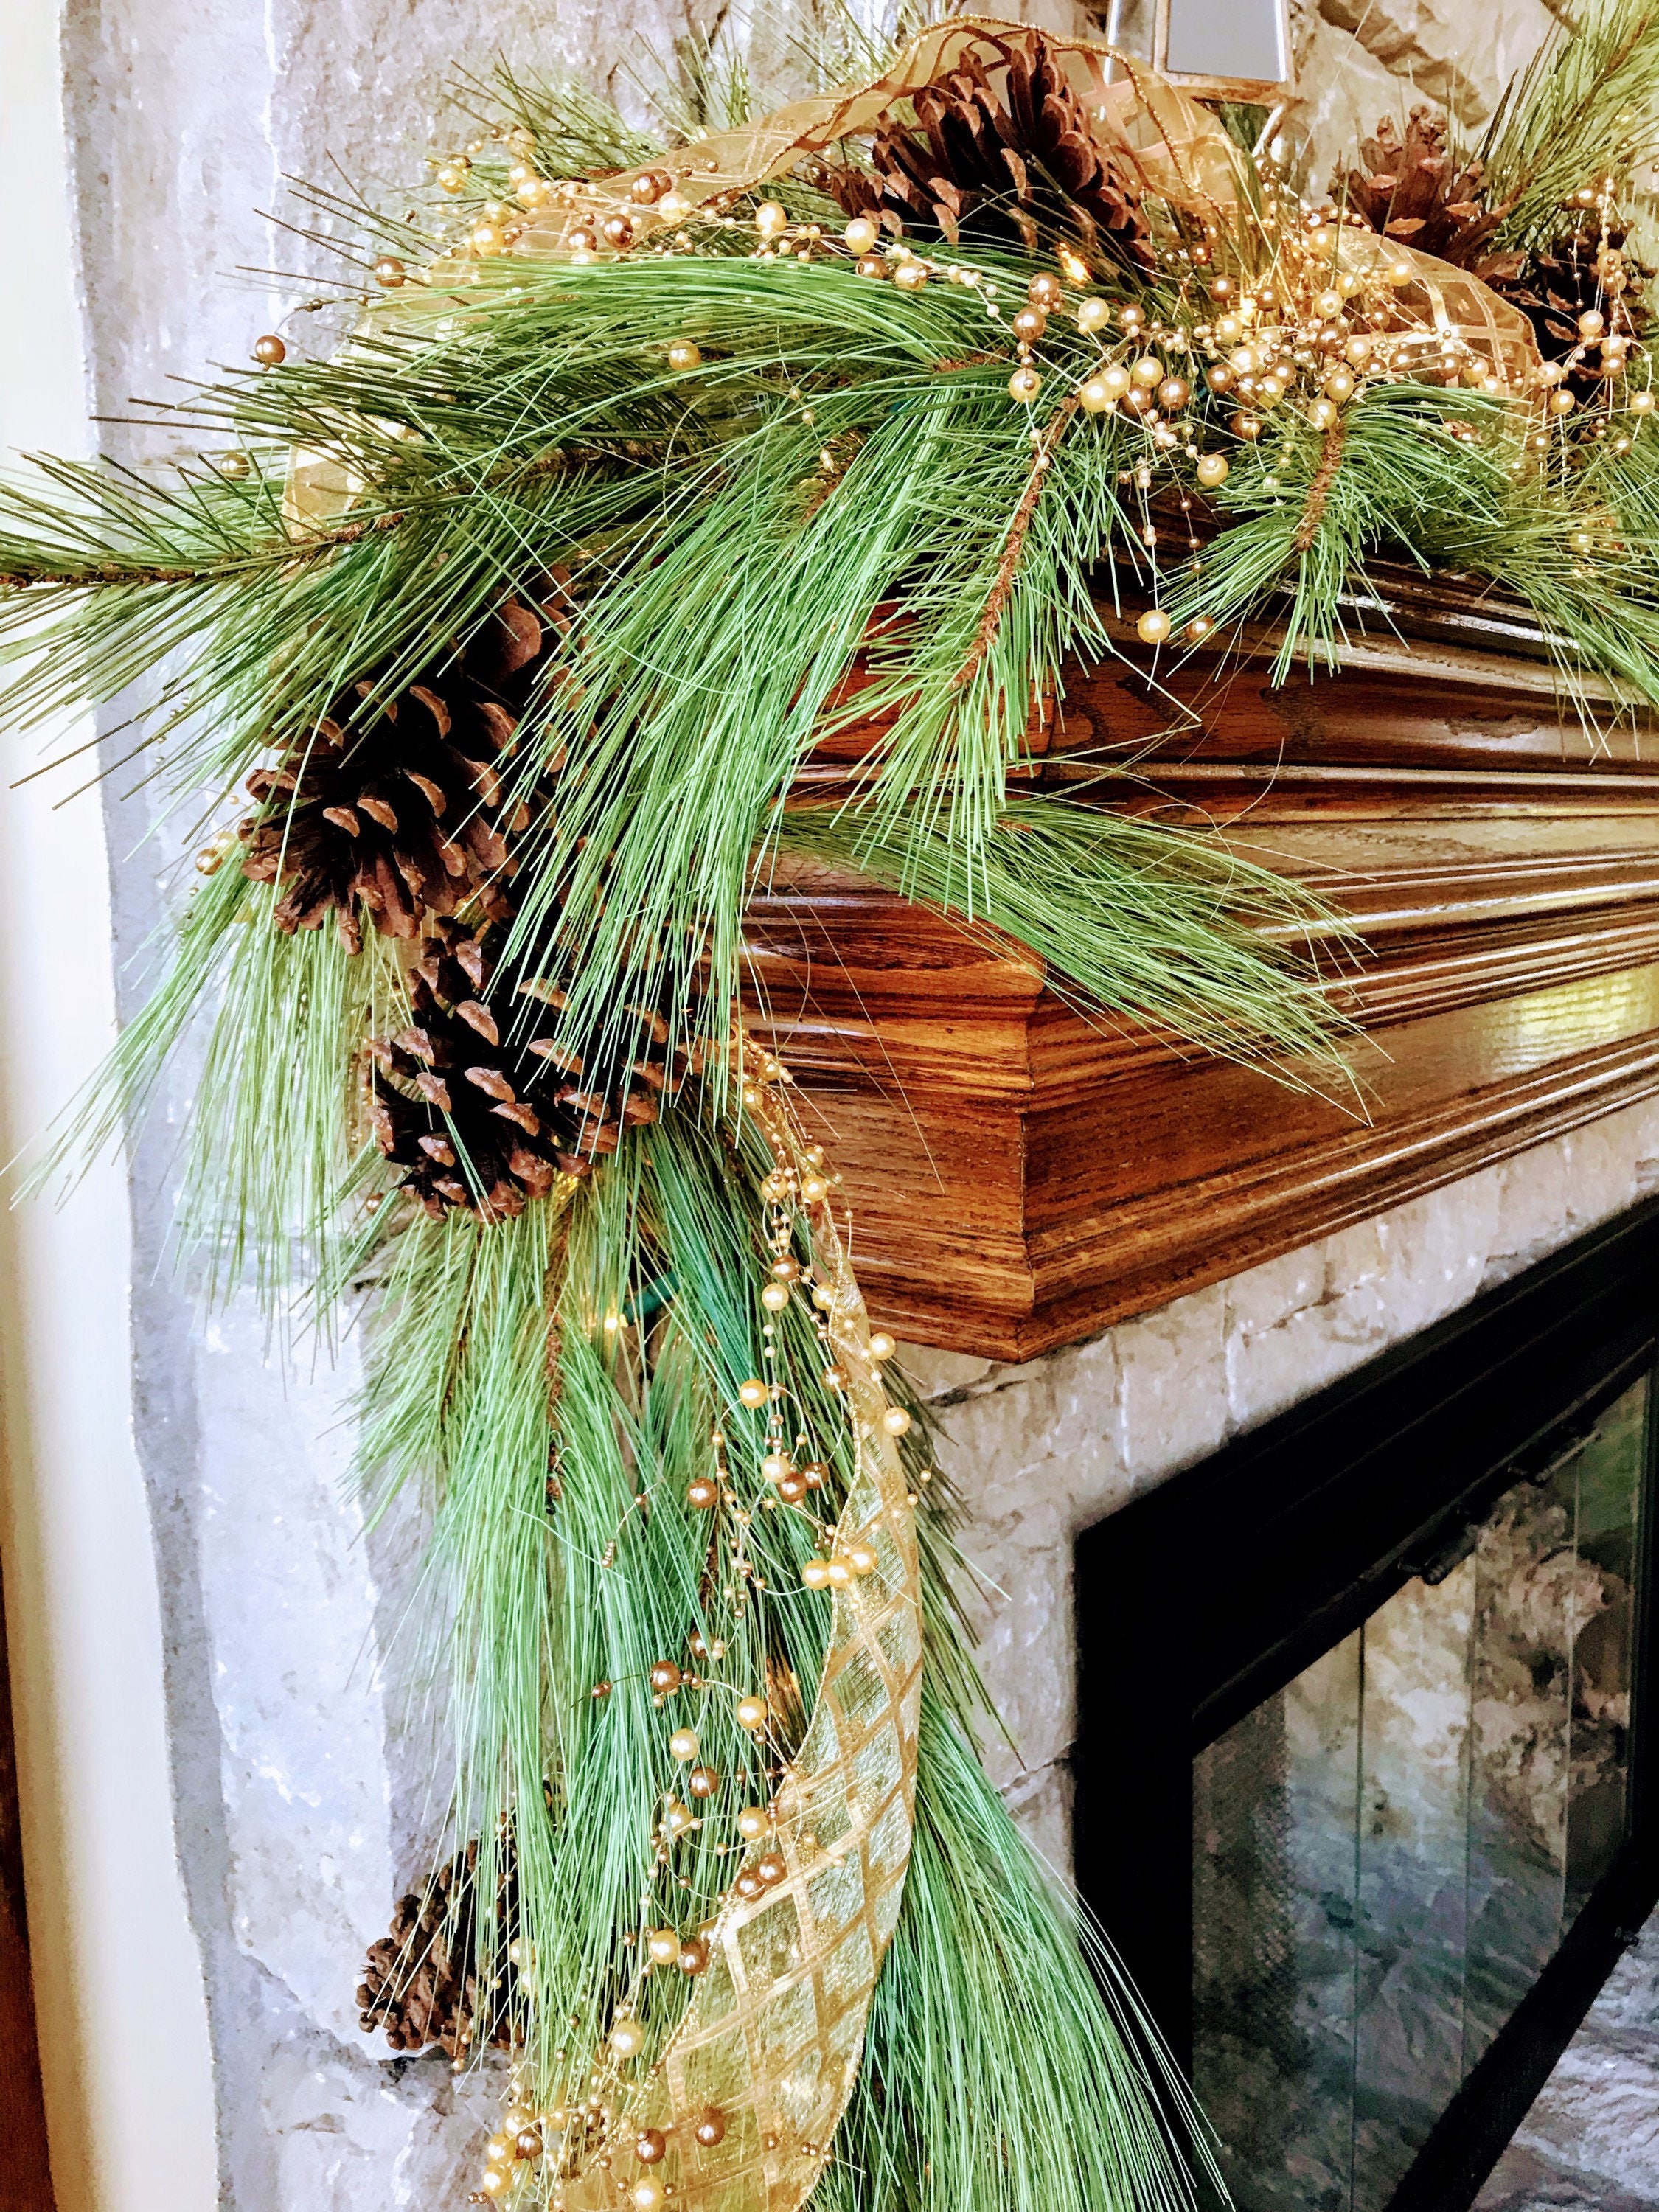 BOICXM Lot de 30 branches de pin artificielles faux pics de verdure pour guirlande et décoration de Noël aiguilles de pin artificielles 23,9 cm